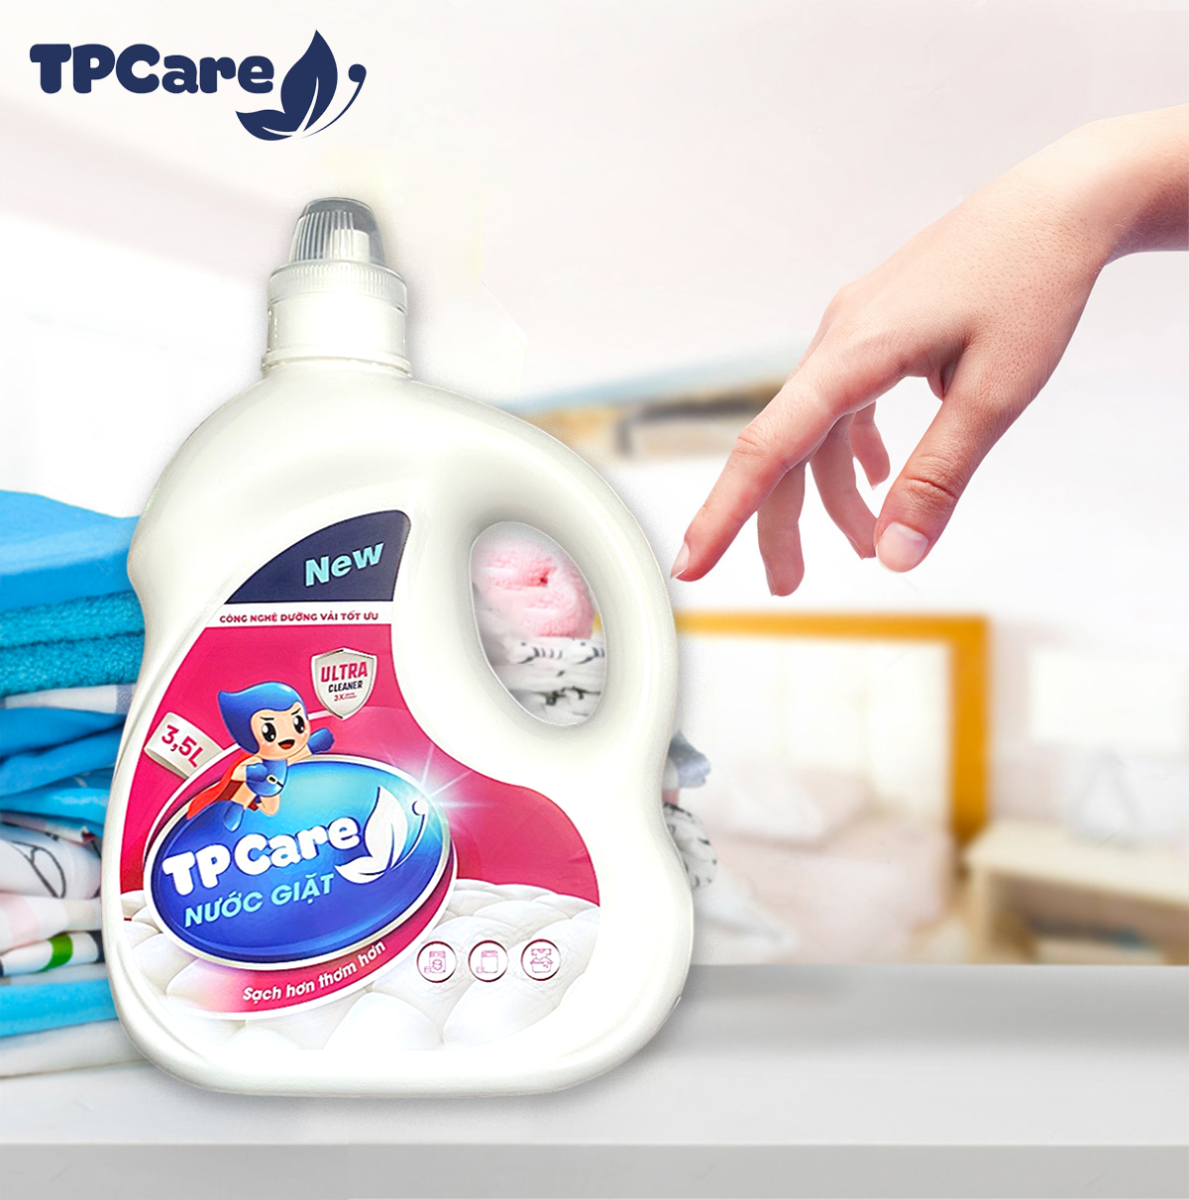 Một nắp nước giặt xả TPCare bằng bảo nhiều ml? Cách tính liều lượng phù hợp khi giặt